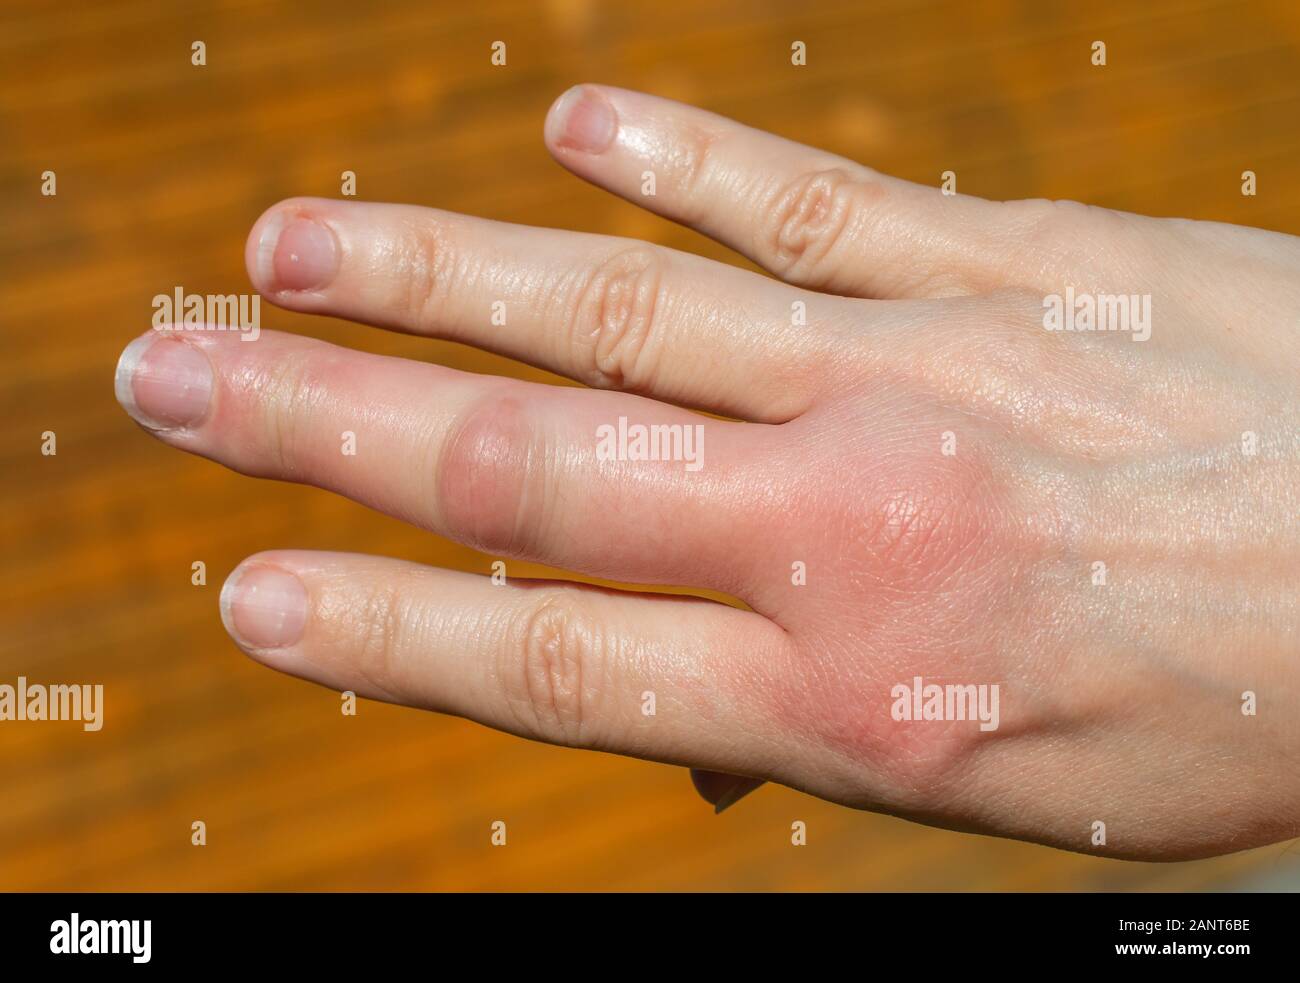 Une main droite après une piqûre d'abeille sur un fond de bois, de l'enflure, gonflement des mains, des doigts la main après une piqûre d'abeille Banque D'Images